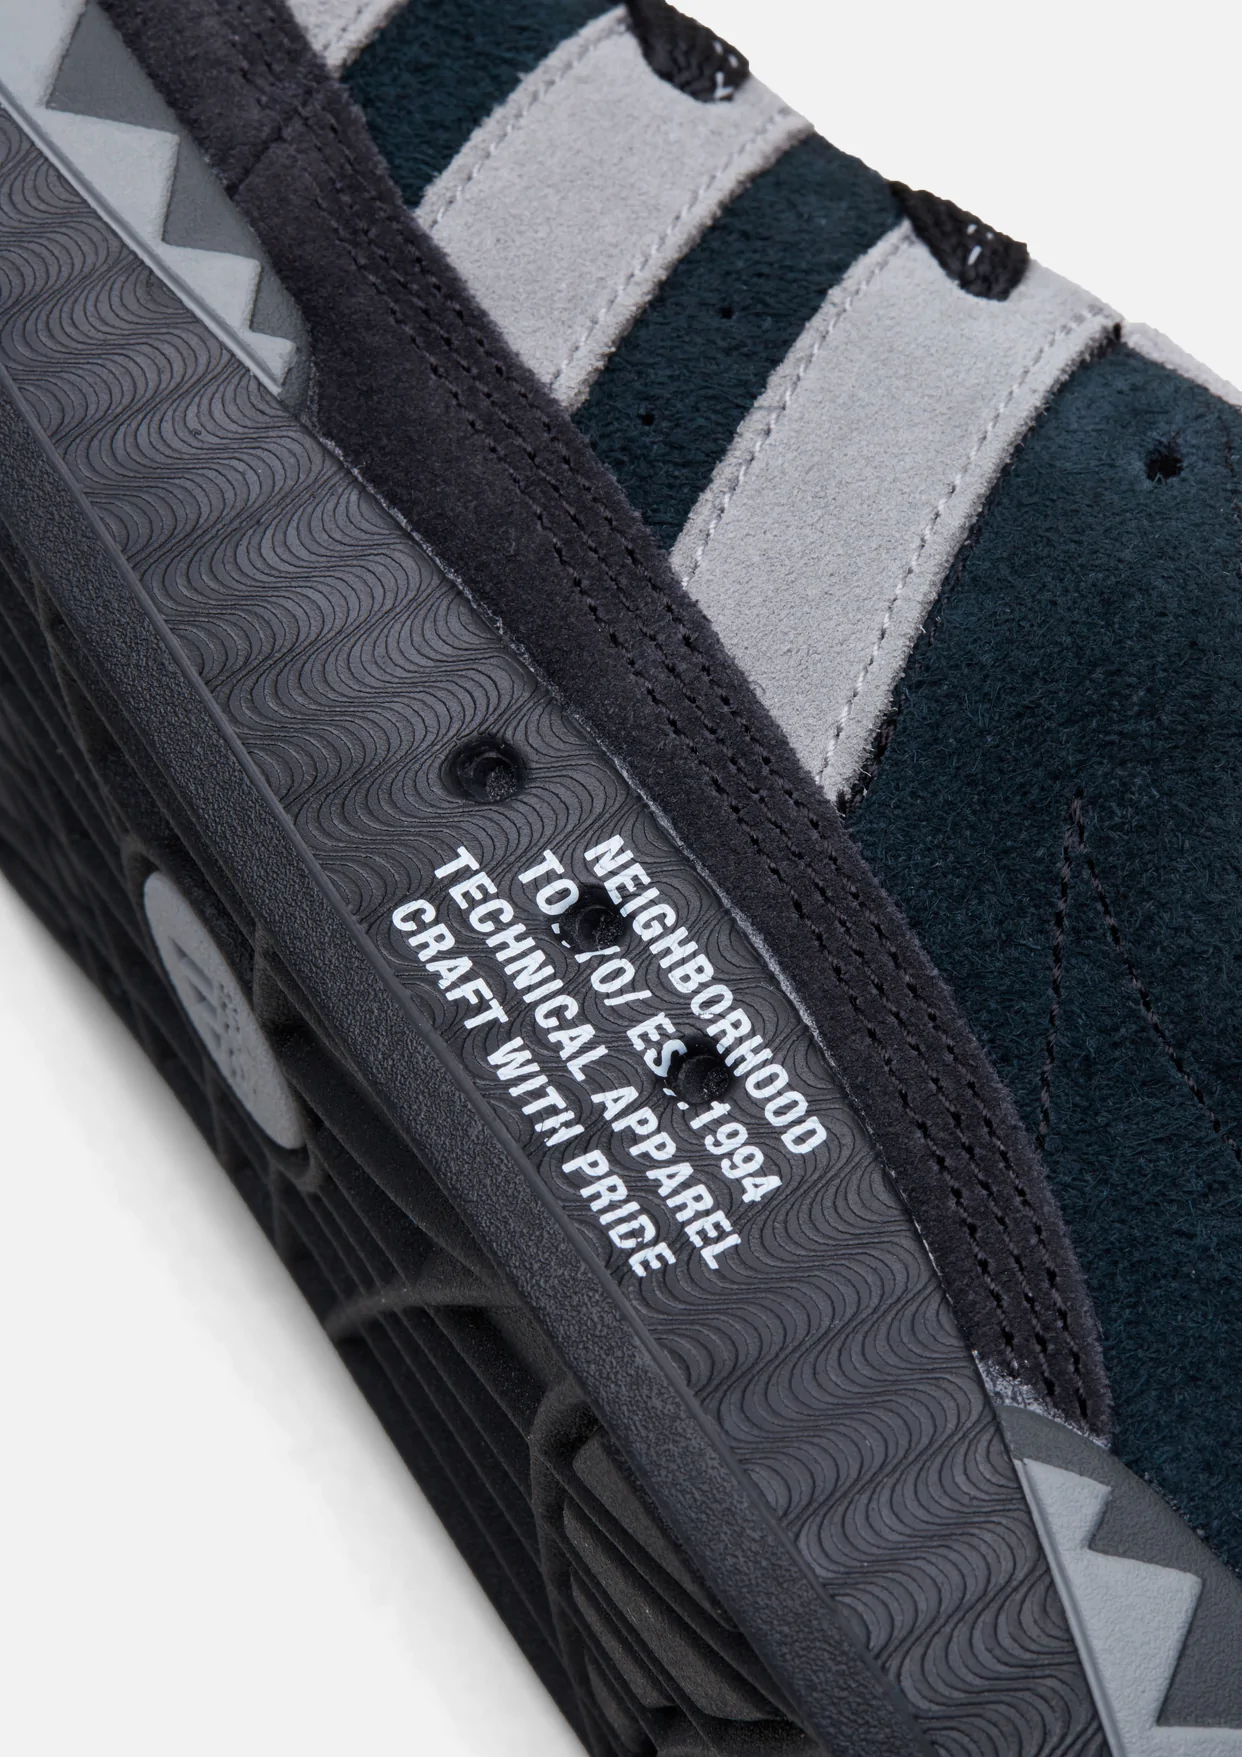 neighborhood-adidas-adimatic-black-grey-release-20221105